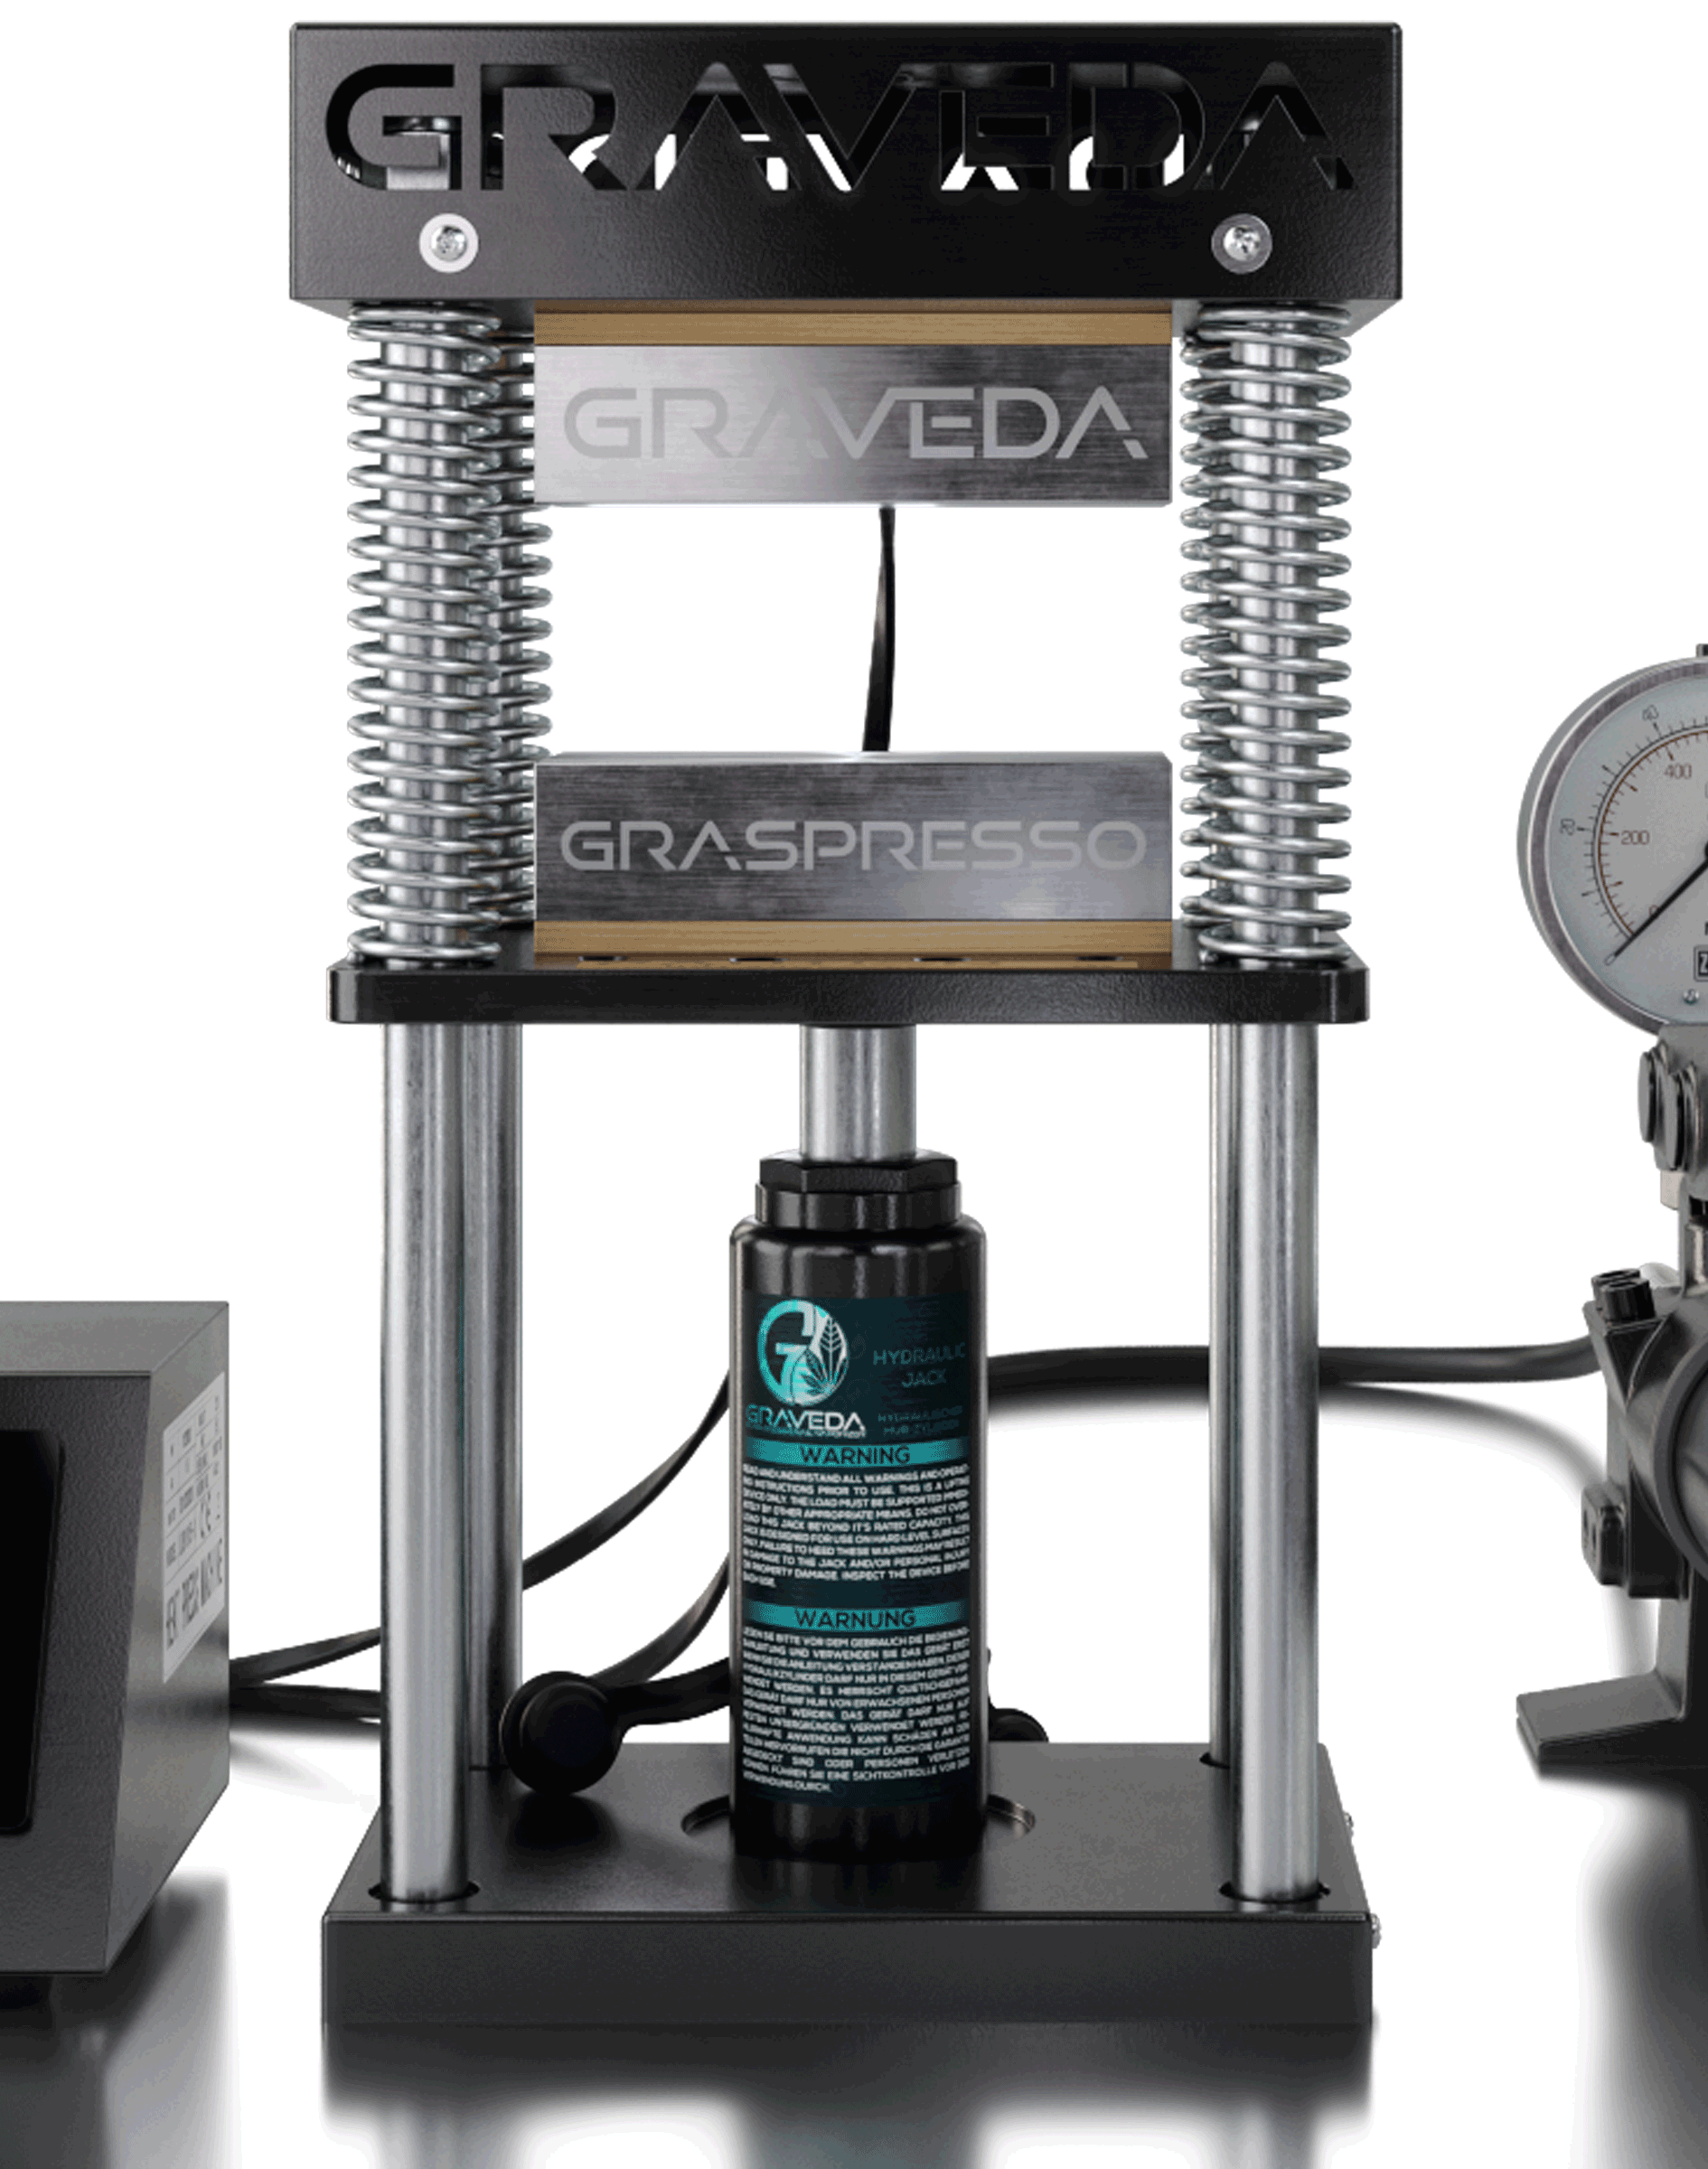 Graveda Refurbished Graspresso - 15T Rosin Press mit 15 Tonnen Hydraulik Zylinder und Druckanzeige, 12 x 6 cm Platten